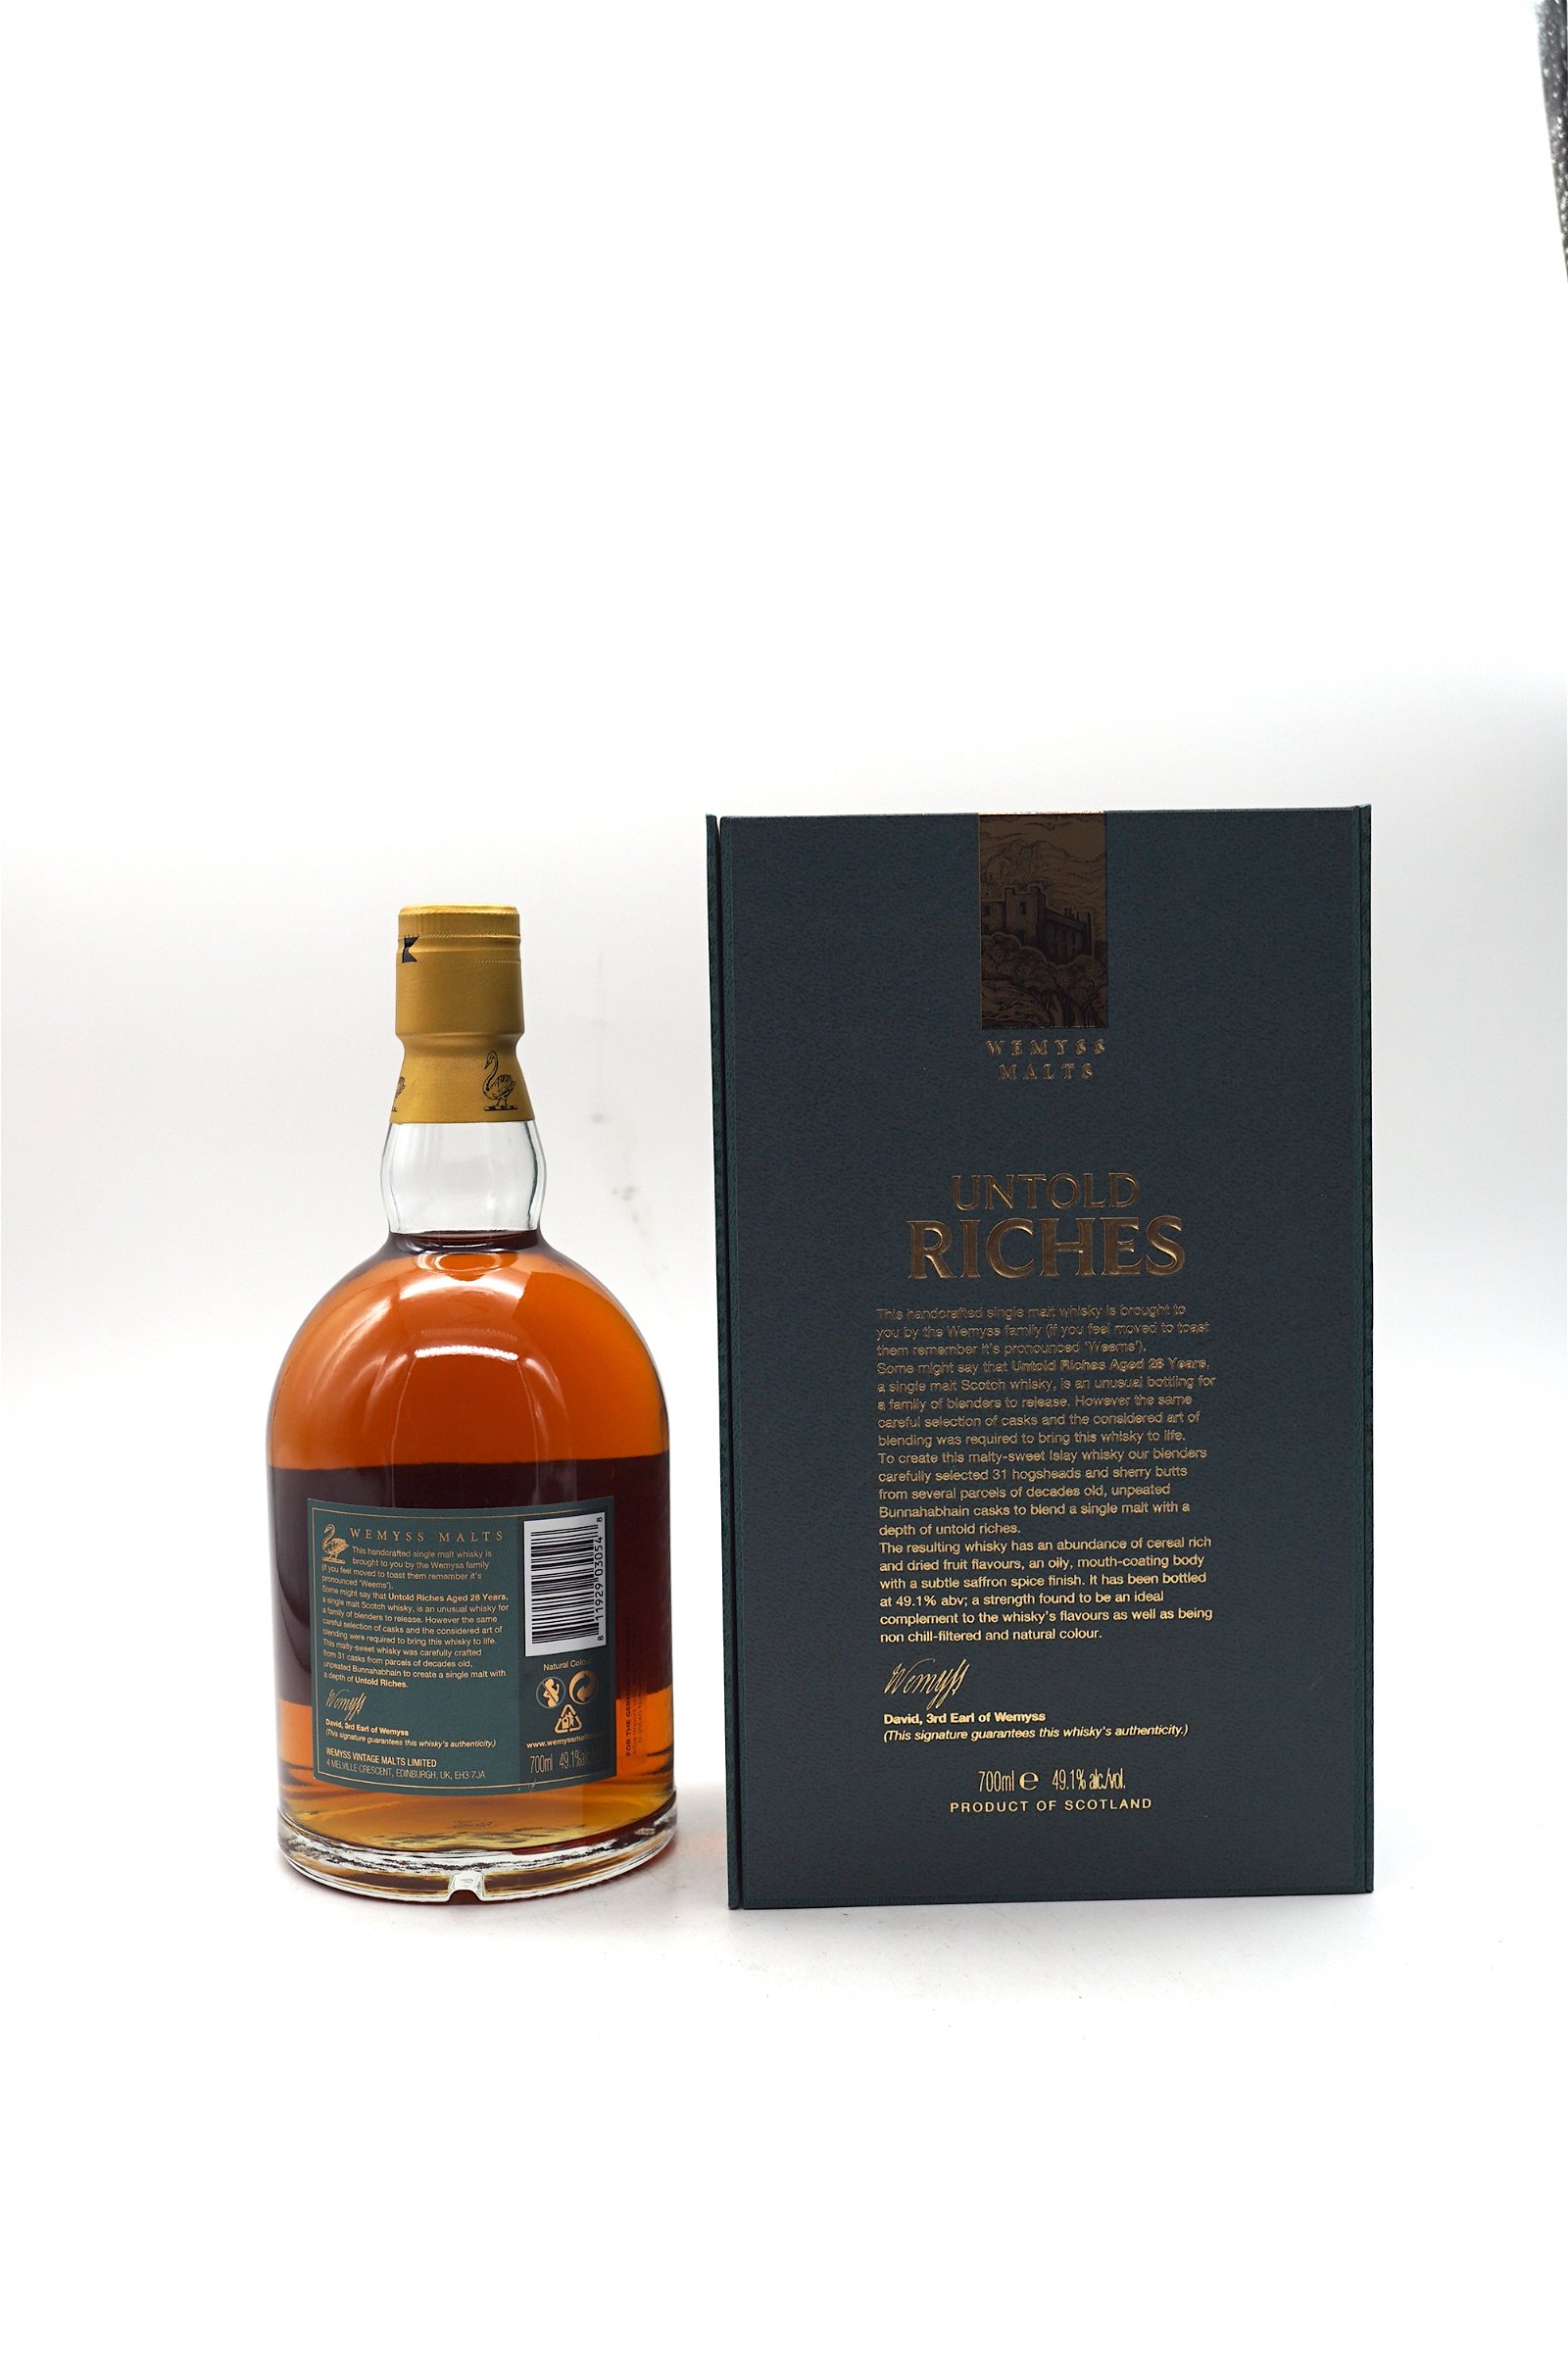 Wemyss Malt Untold Riches 28 Jahre Bunnahabhain Distillery Islay Single Malt Scotch Whisky